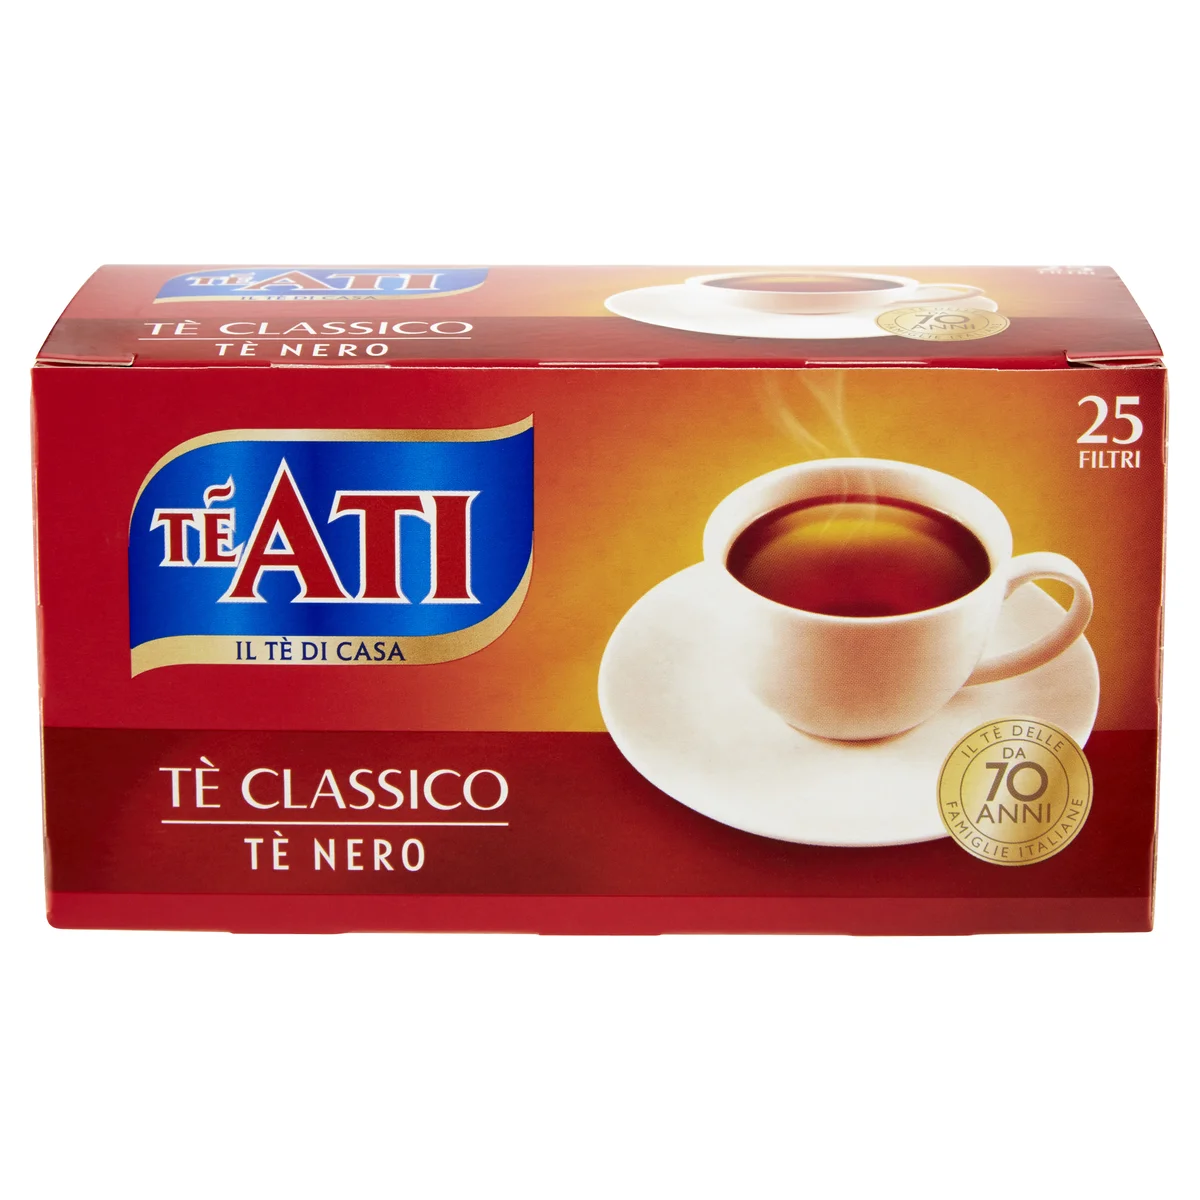 TèAti Tè classico 25 filtri 37,5 g